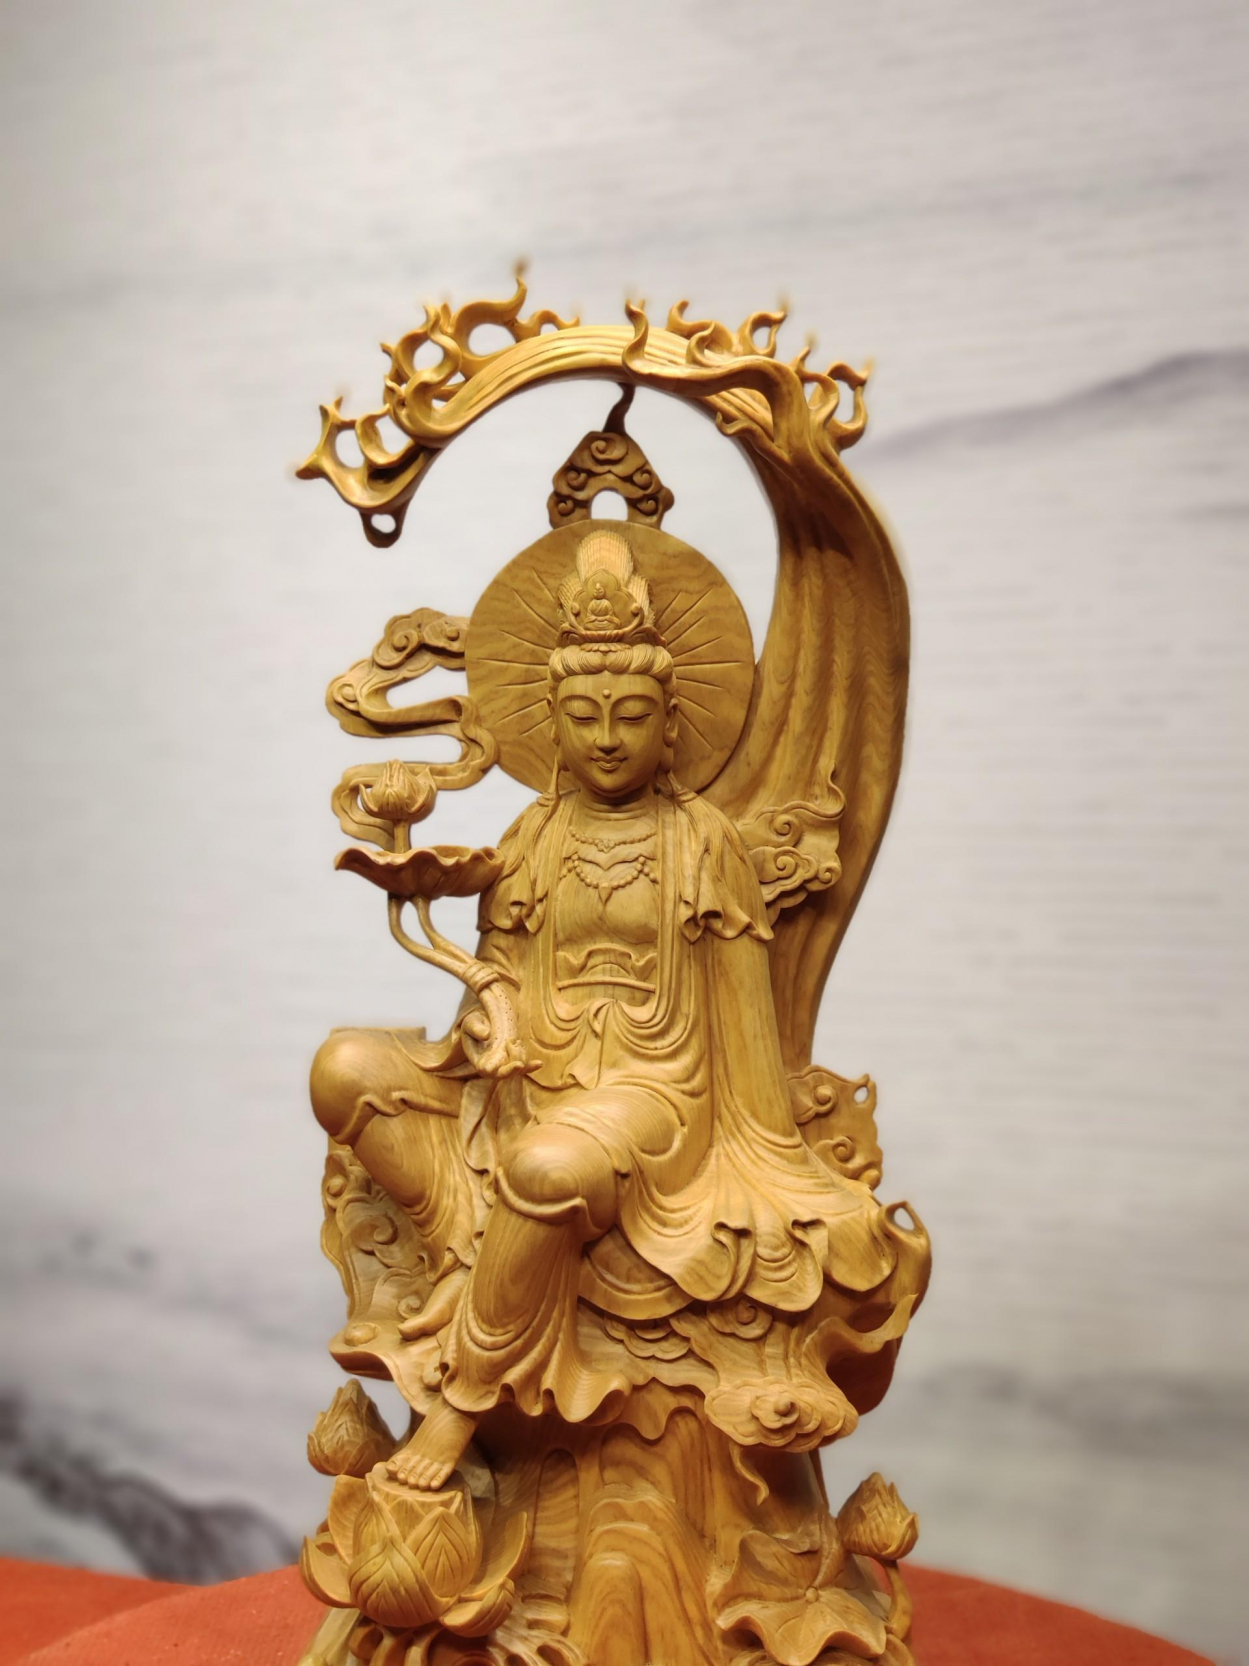 Trong phong thủy, tượng Phật sẽ giúp xua đuổi tà ma, hóa giải kiếp nạn, mang đến sự an lành và bình an cho chúng sinh.